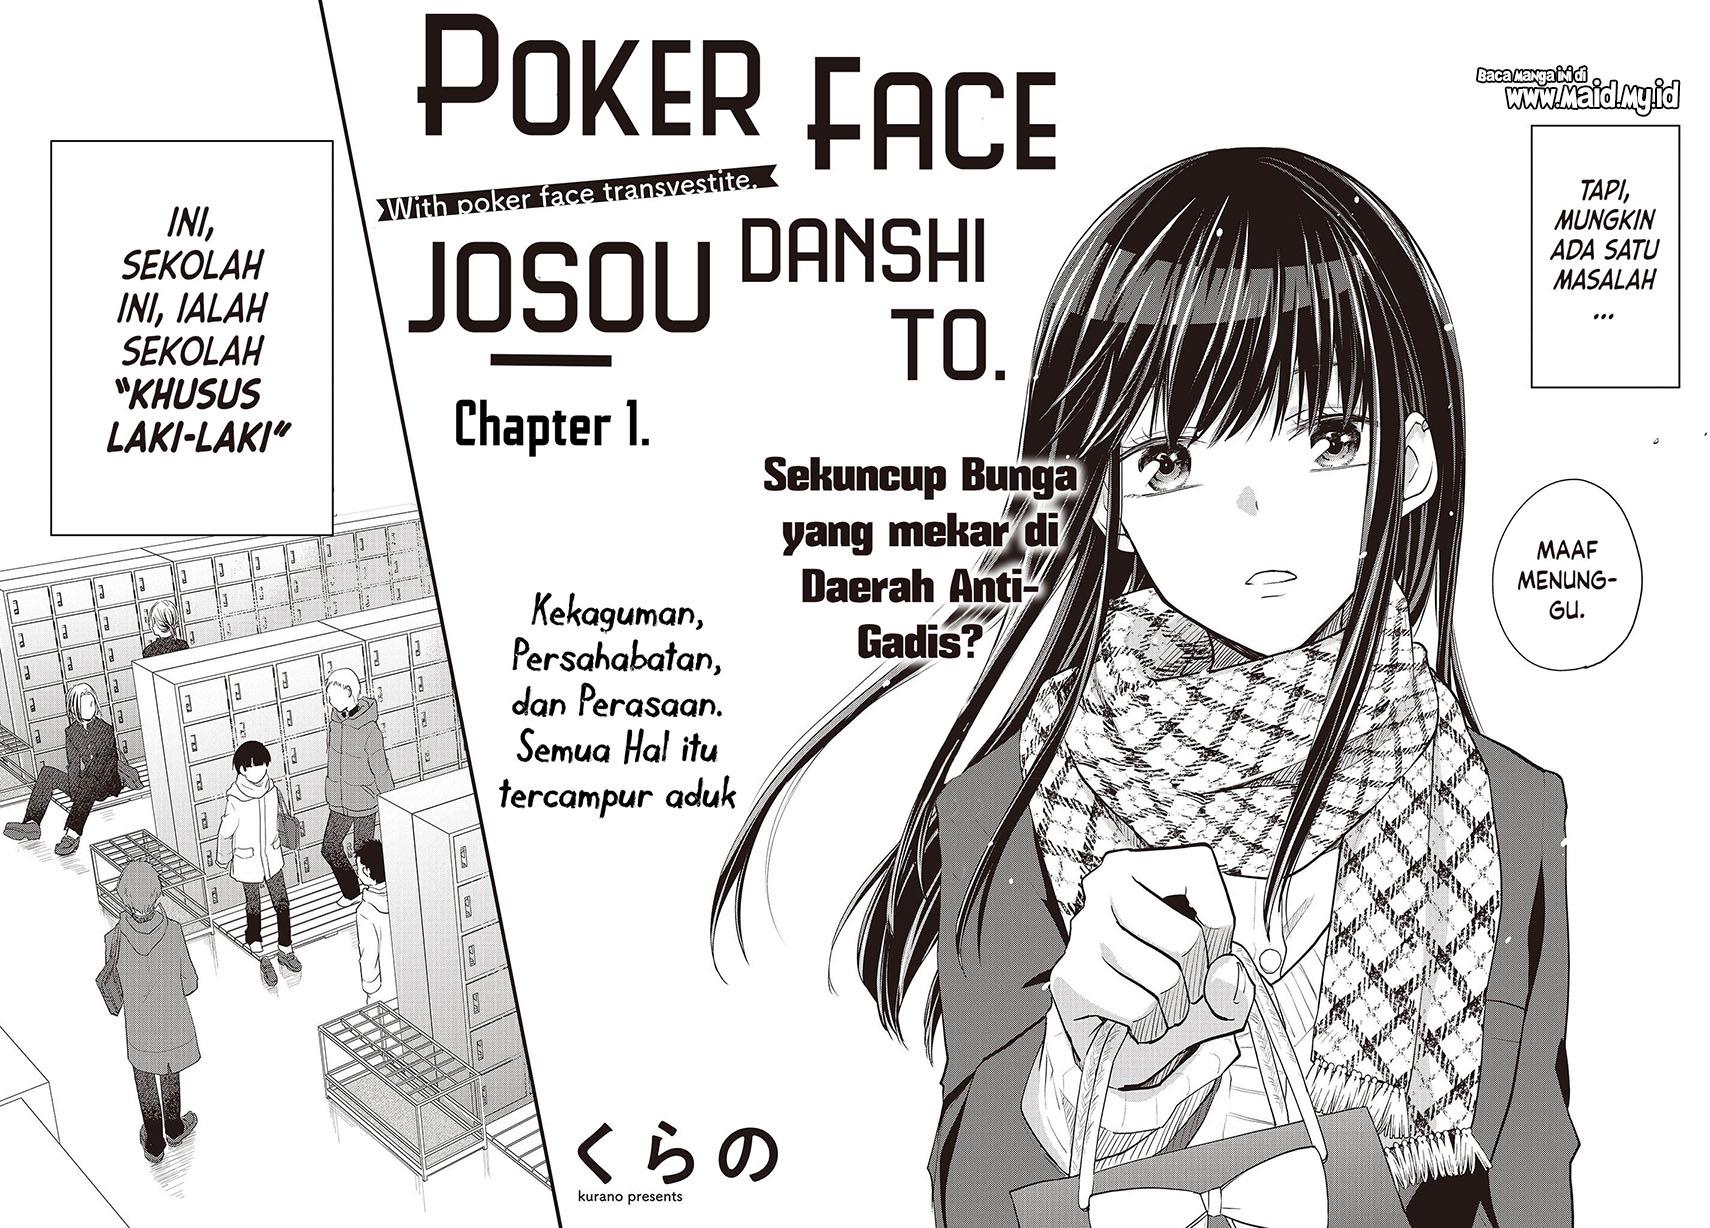 Poker Face Josou Danshi to. Chapter 1